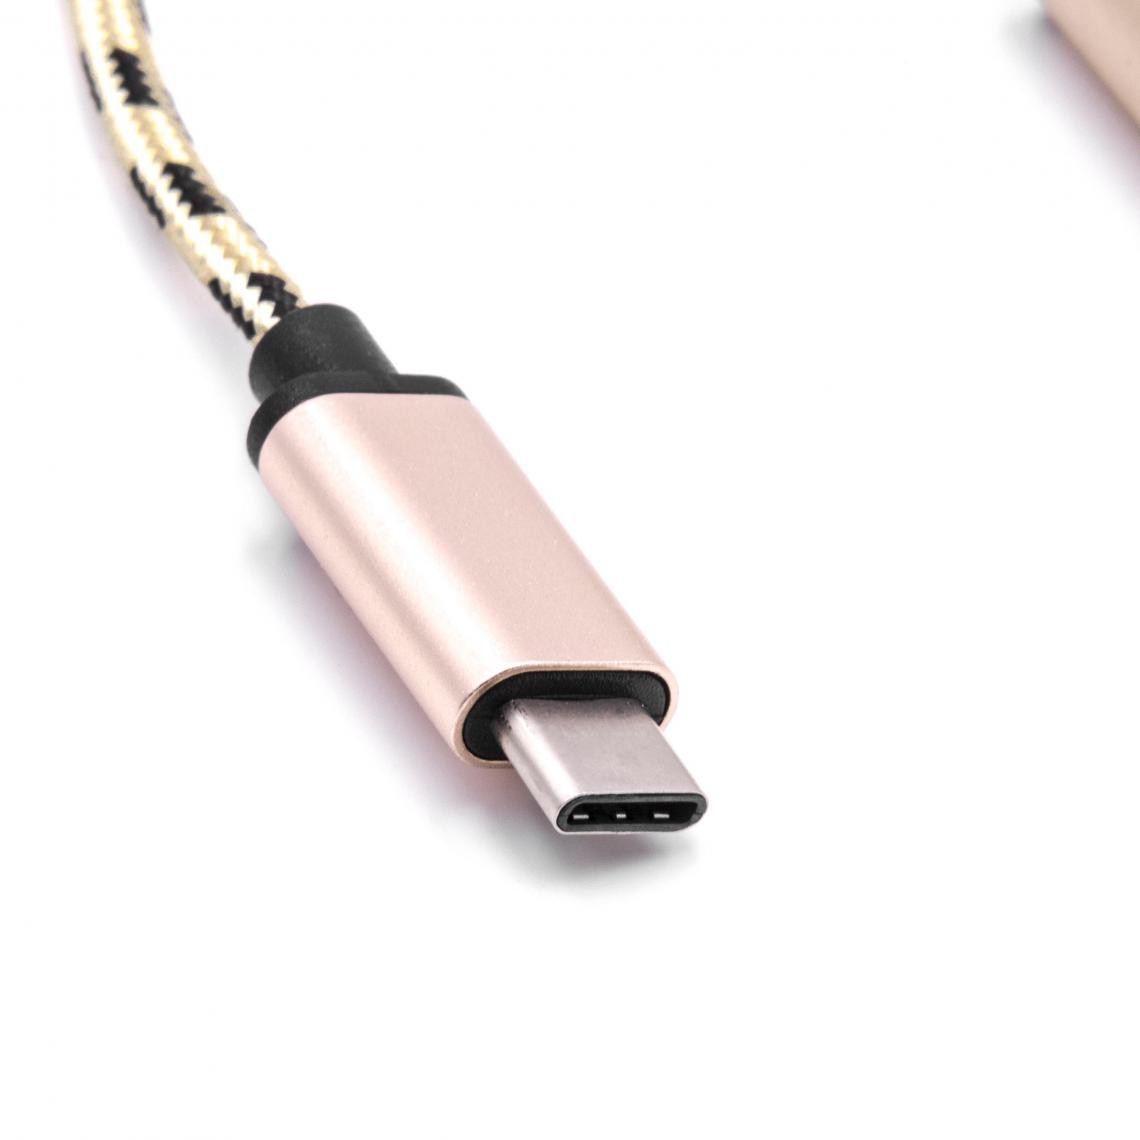 Vhbw - vhbw câble adaptateur USB type C sur USB 2.0 pour Oneplus 3, 3T, 5, 5T, 6 - Accessoires alimentation